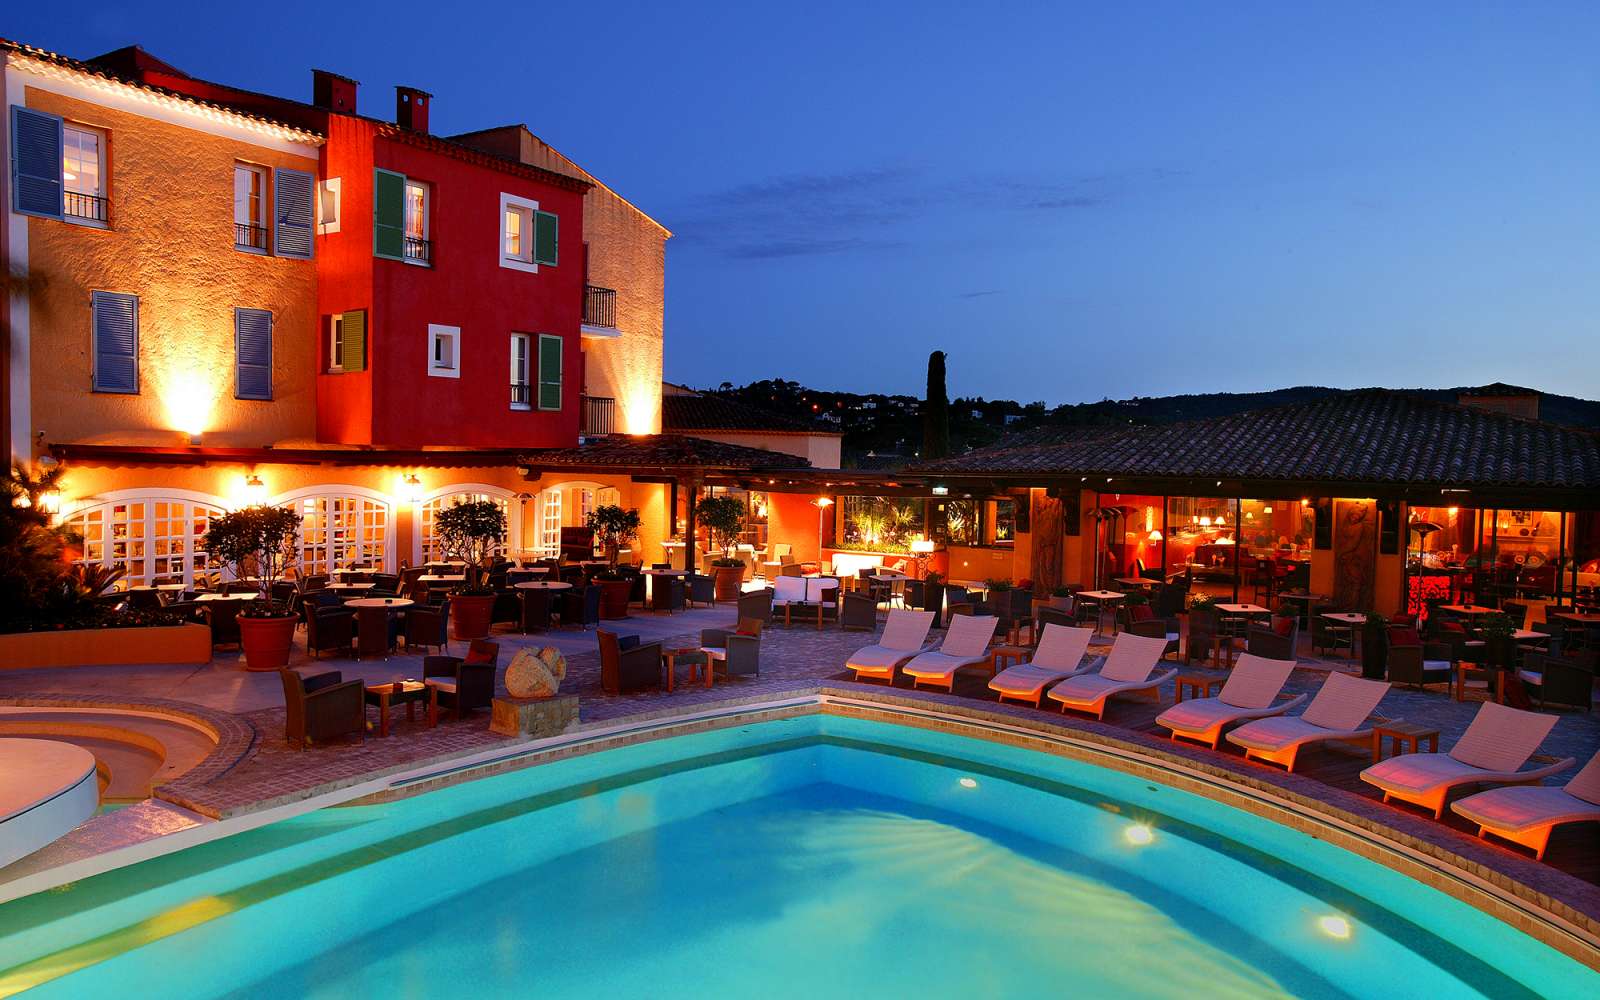 Hotel Byblos in Saint Tropez announces Summer Concert Series - TasteTV